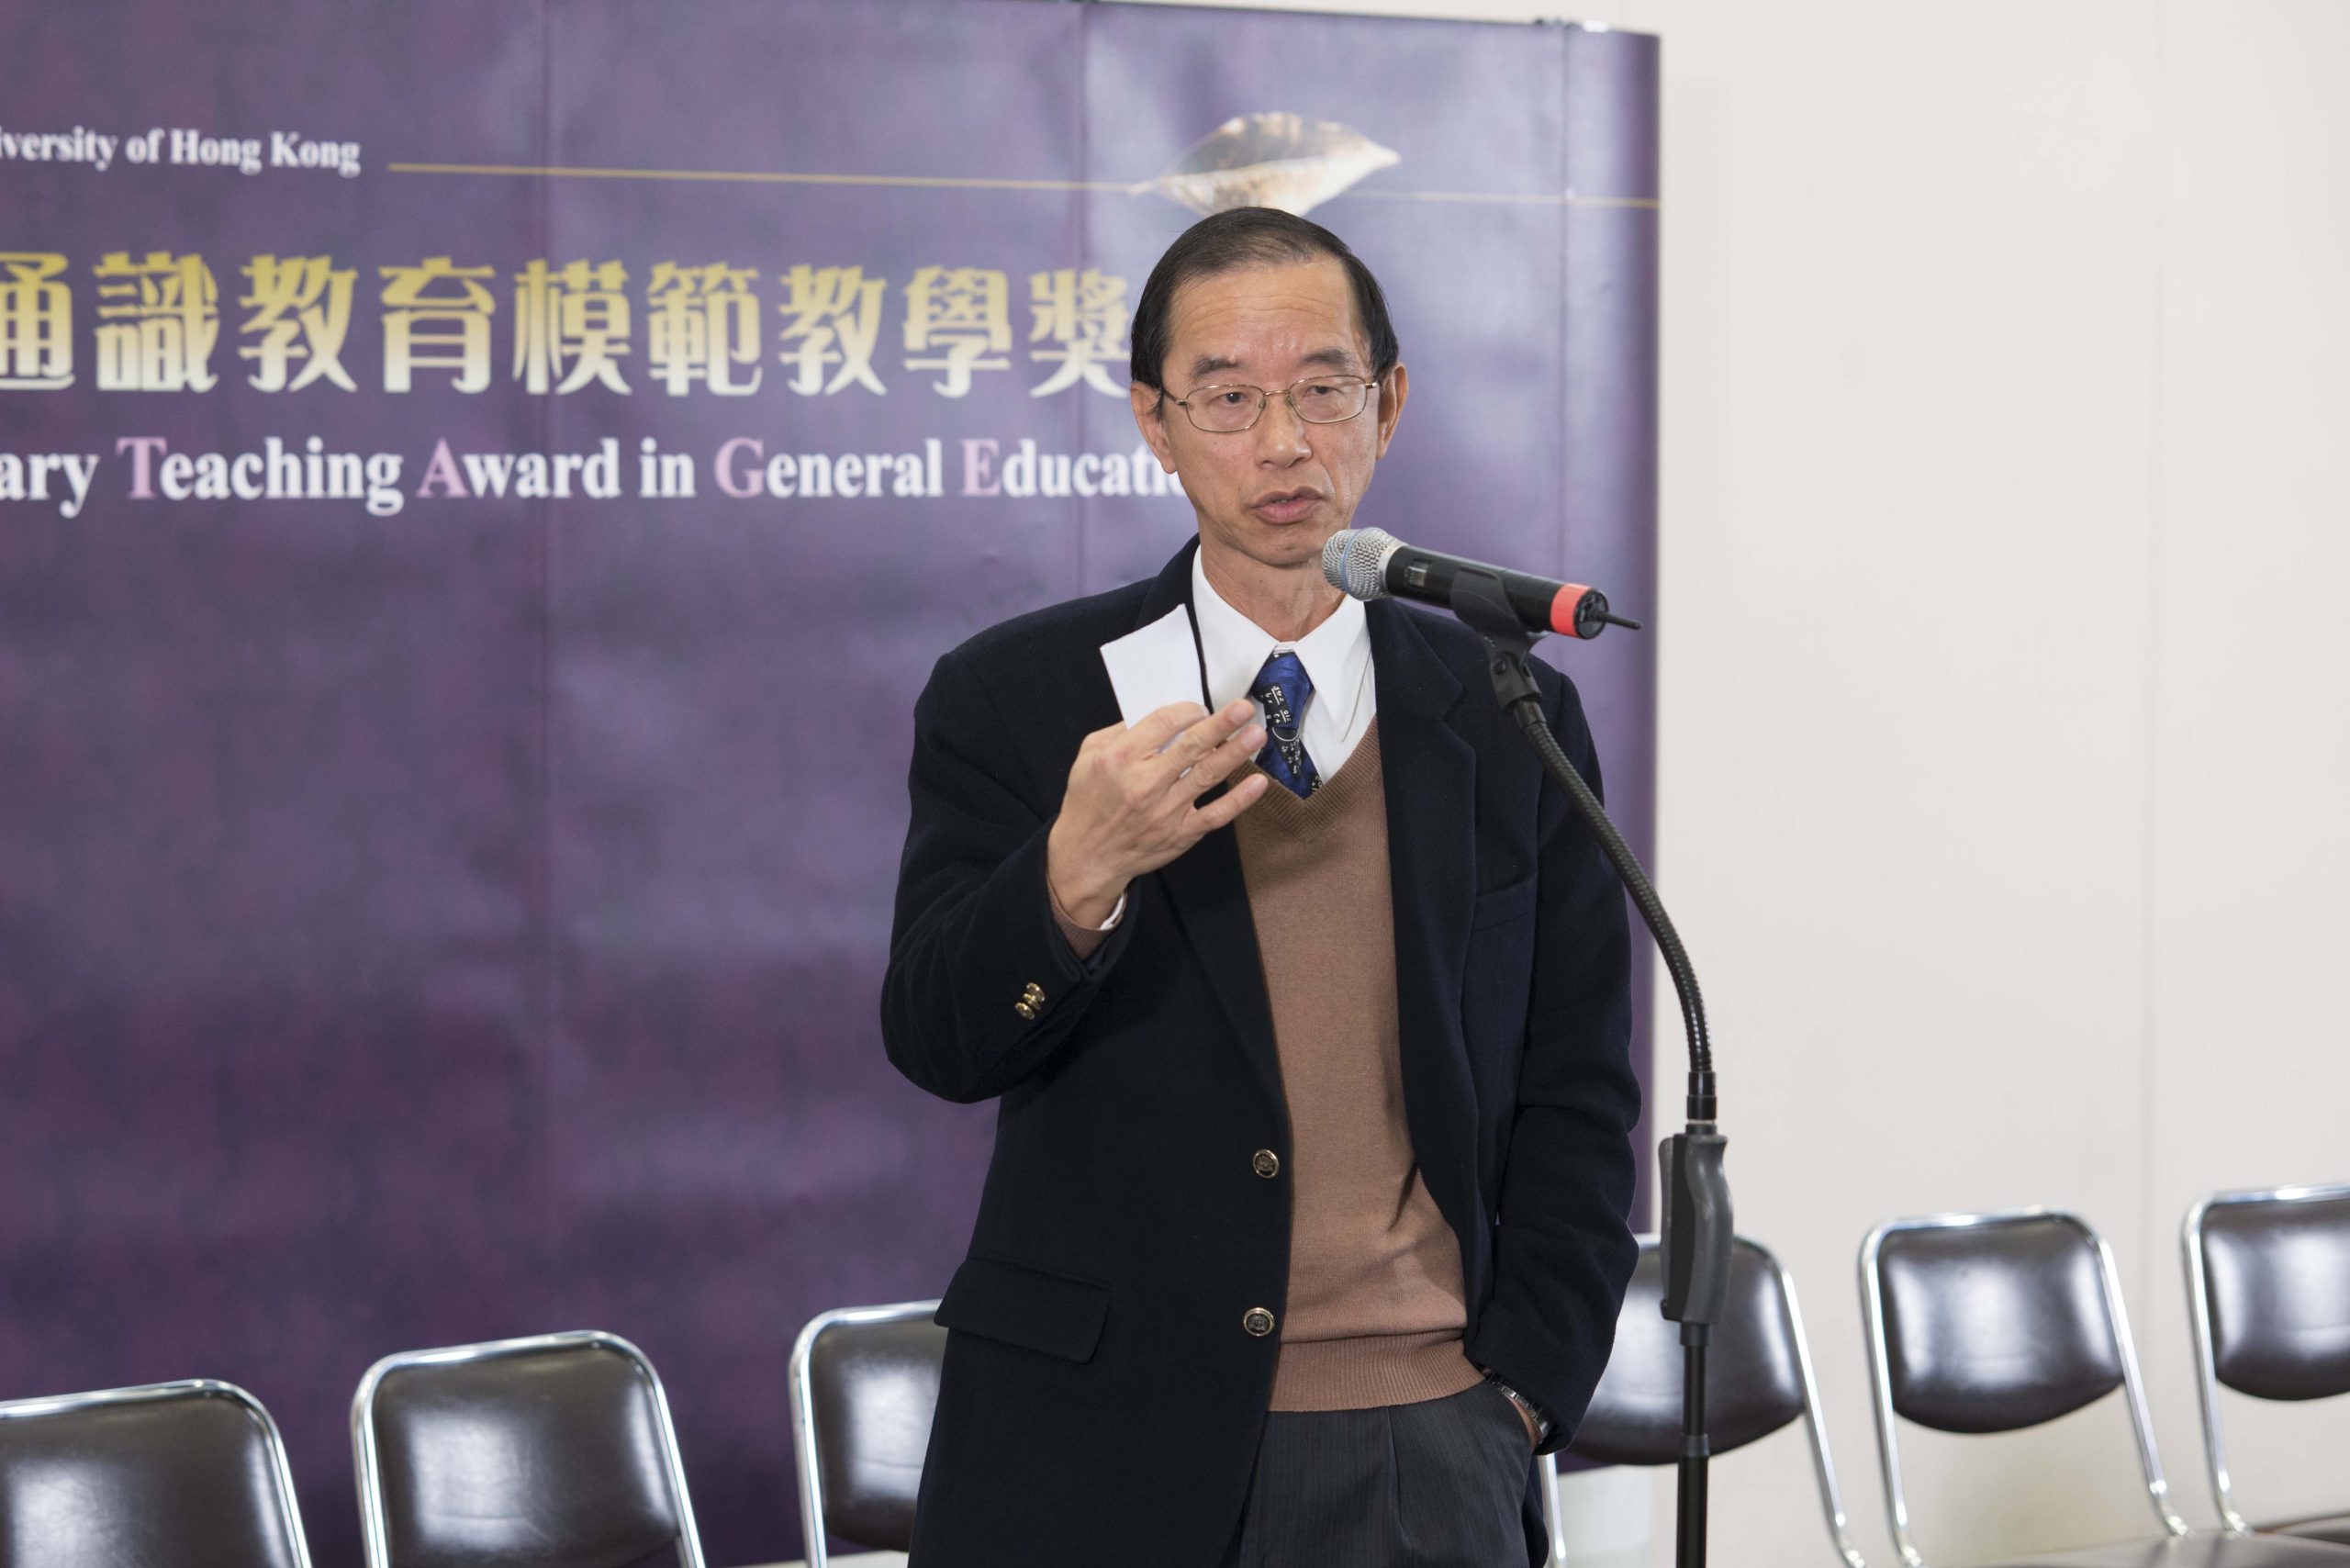 Speech by awardee Prof. Lam Chiu Ying